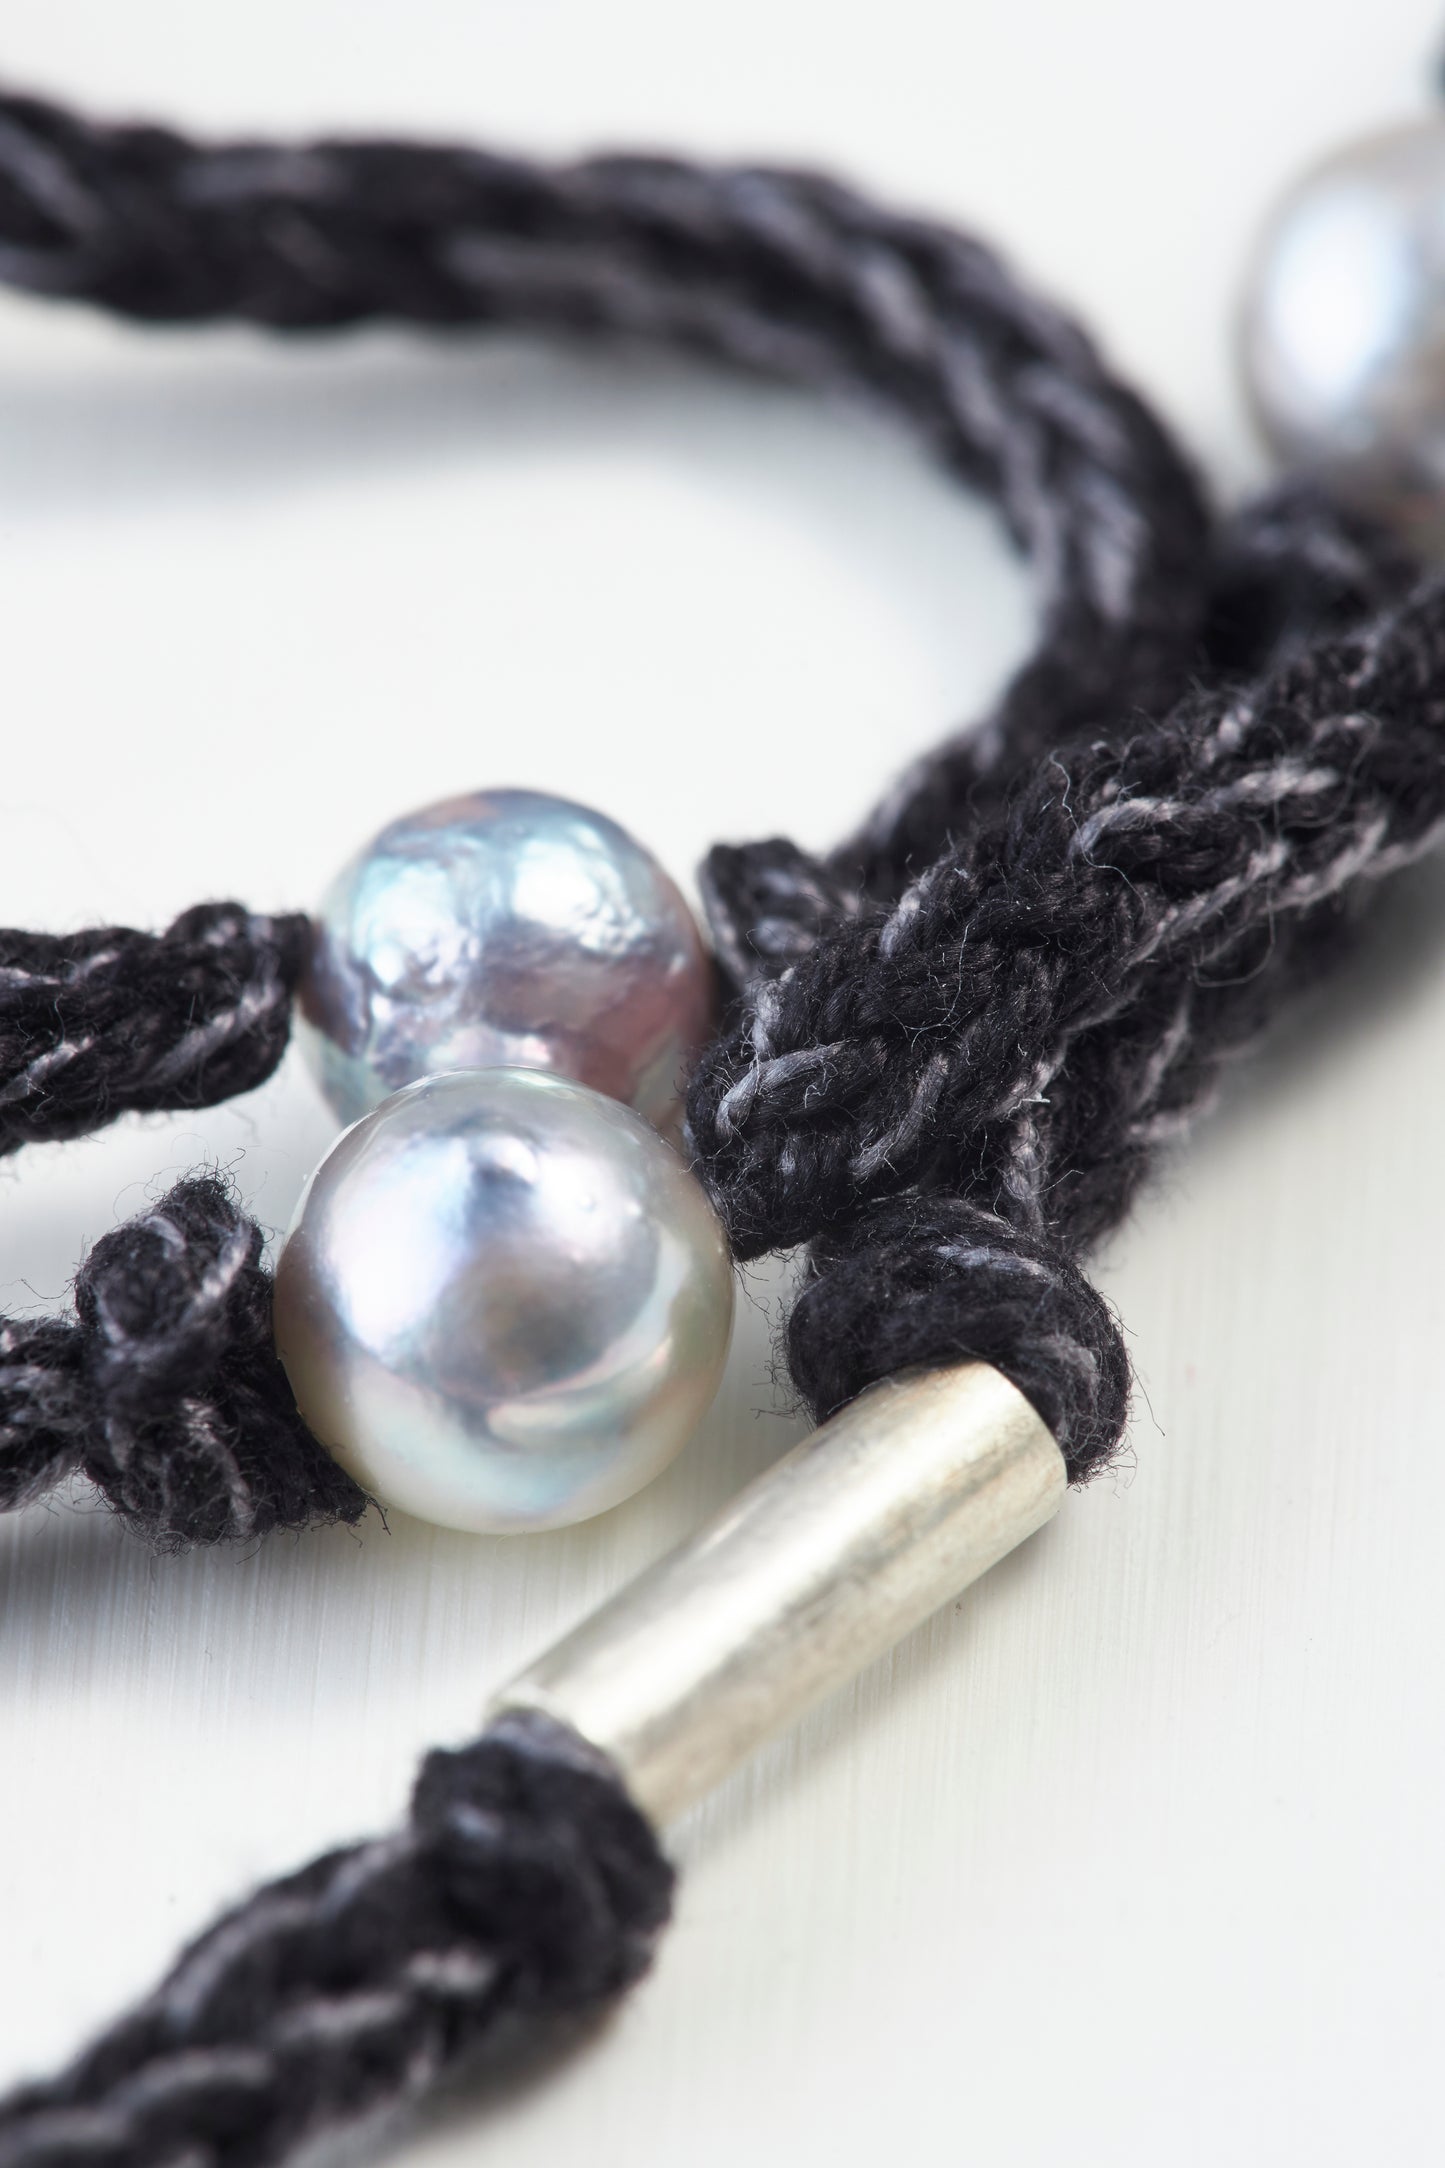 Cotton code Necklace -Black&Grey 70cm